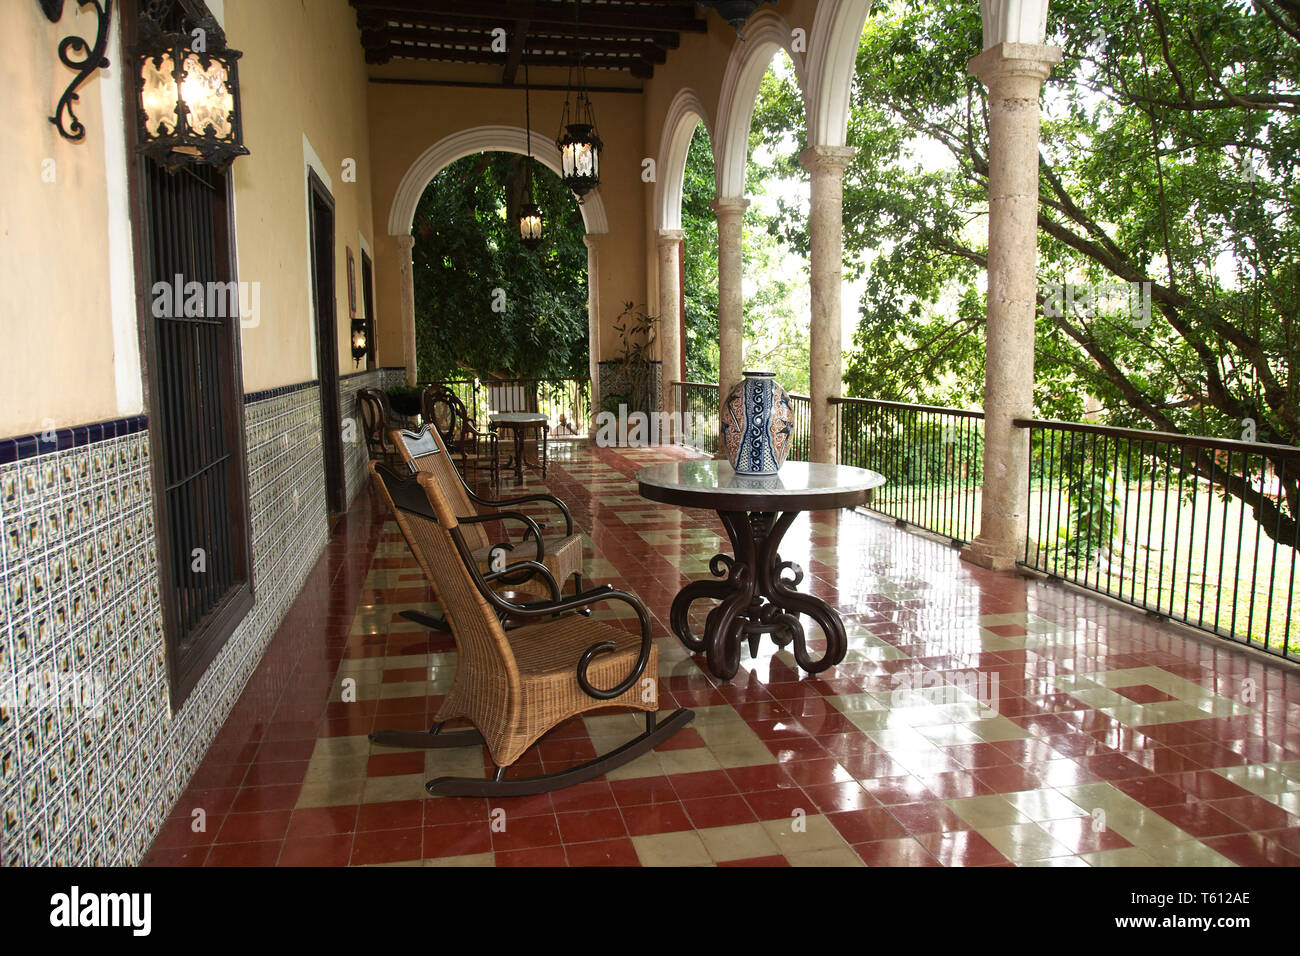 Tecoh, Yucatan, Mexico - 2019: A historic house, the former family home at Hacienda Sotuta de Peon. Stock Photo